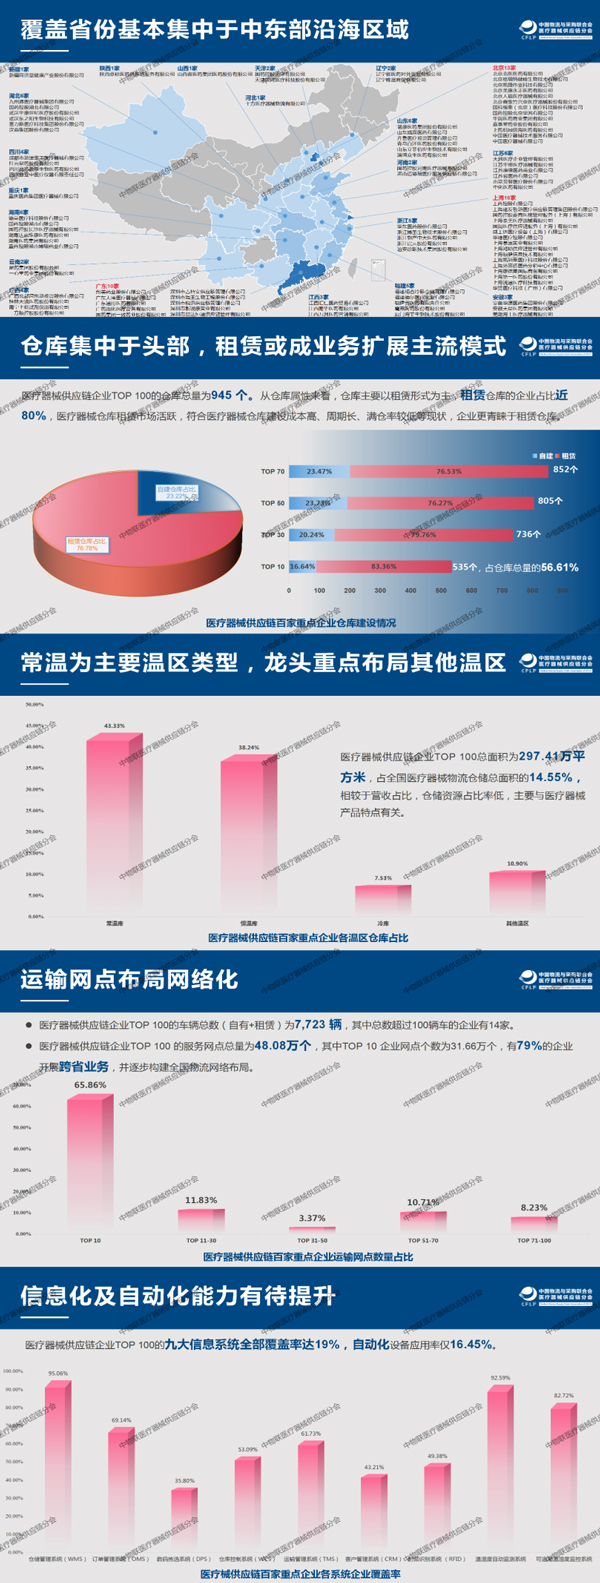 国科恒泰获评“2020年度中国医疗器械供应链企业Top100”第九位